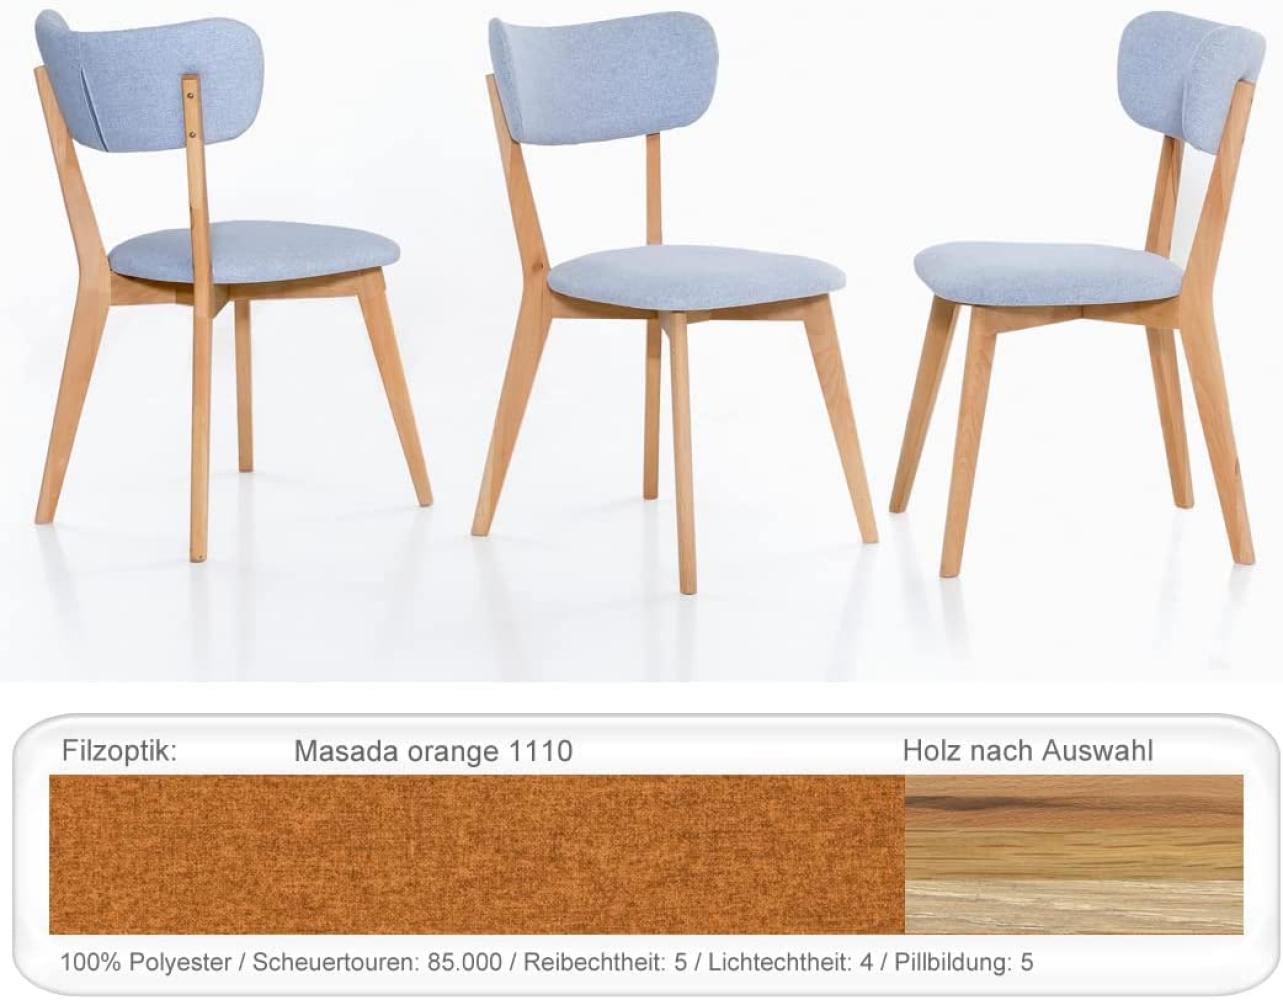 4x Holzstuhl Norina 12 Polsterstuhl Esszimmerstuhl Küchenstuhl Variant Eiche natur geölt, Masada orange Bild 1